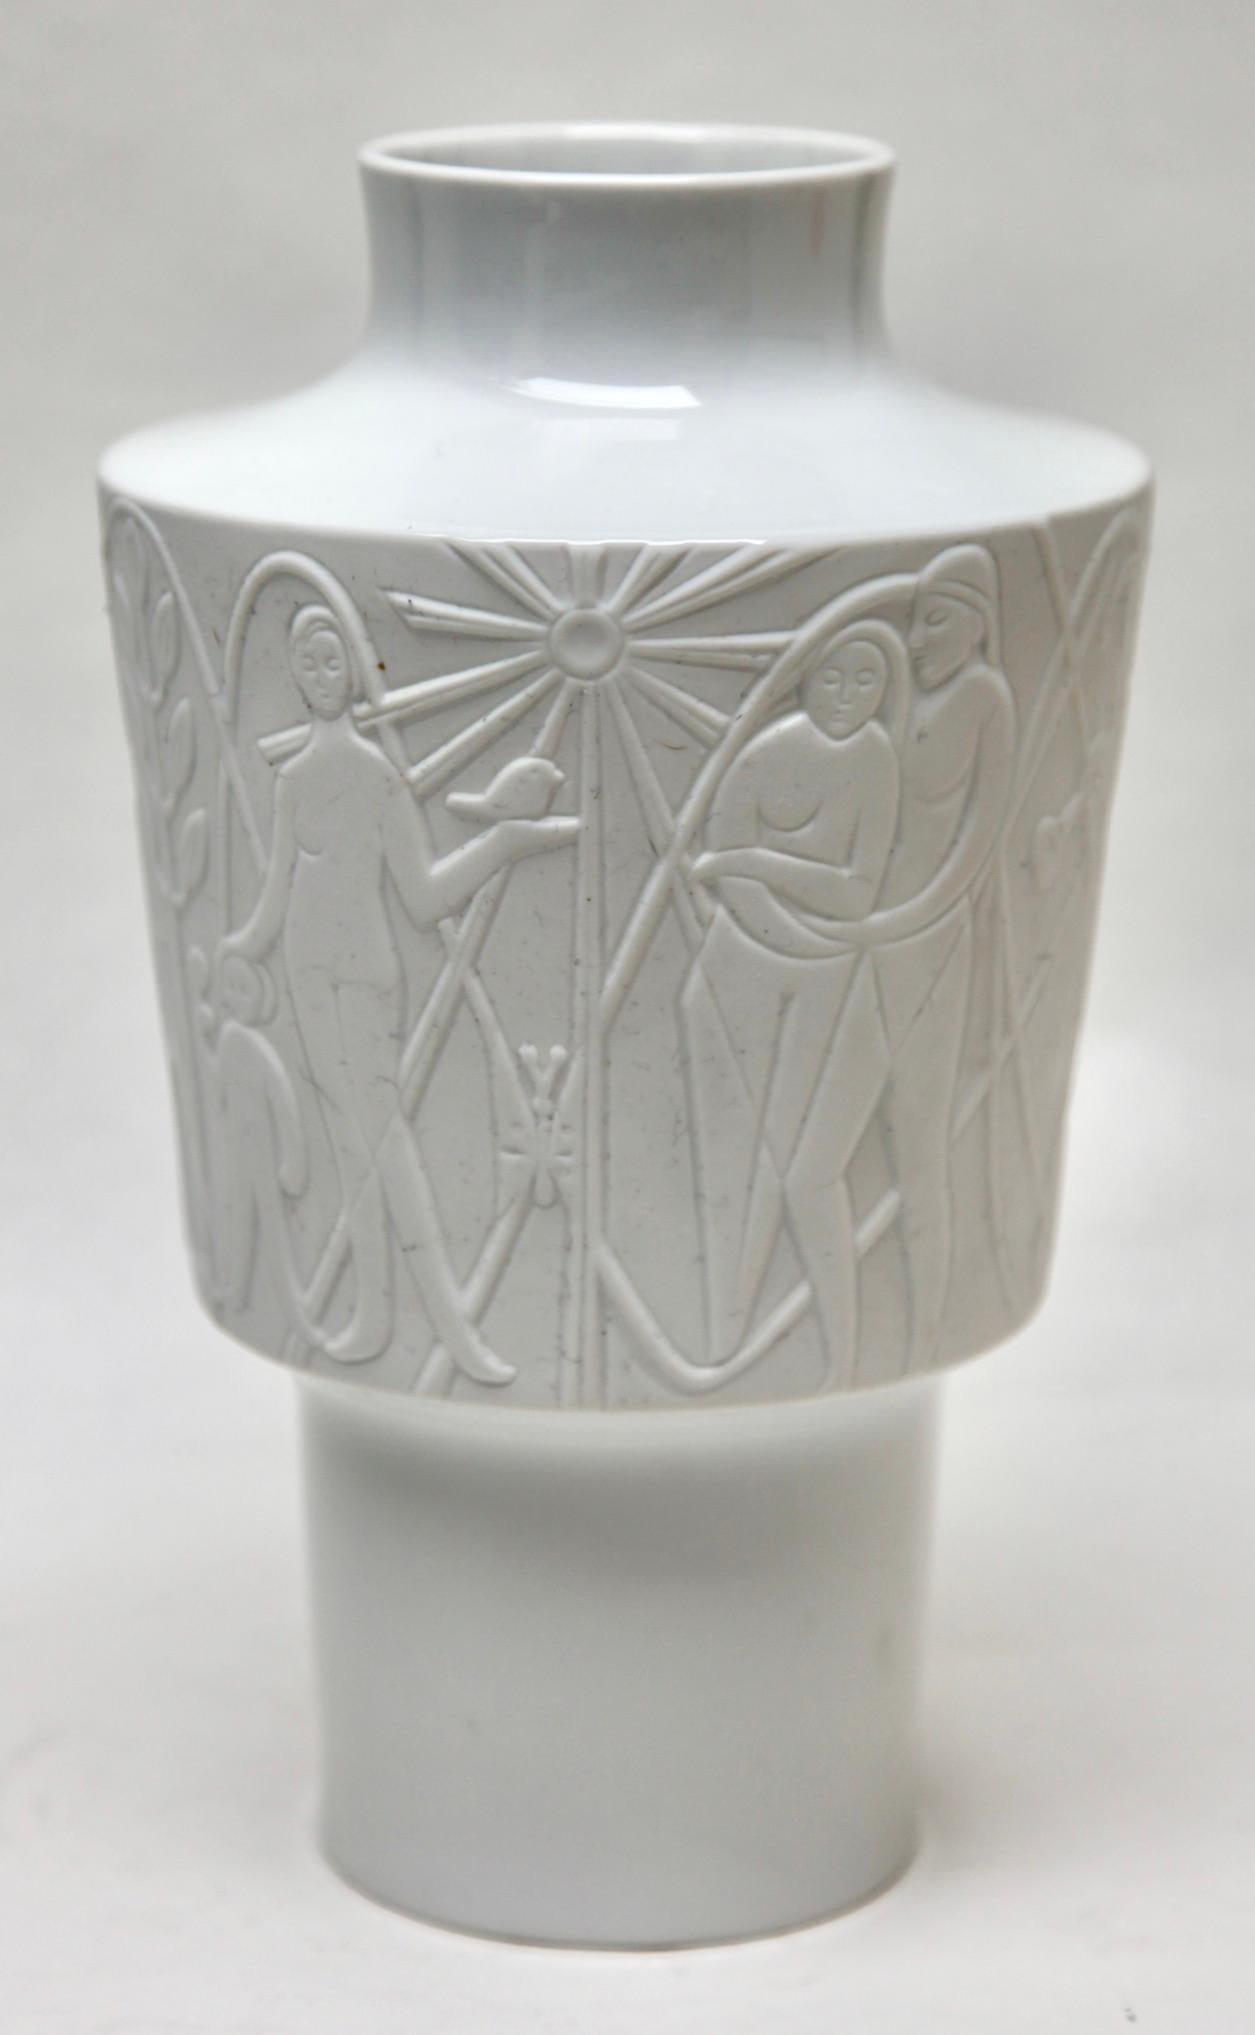 Edelstein Vase en porcelaine avec images stylisées Allemagne' 1960s
Porcelaine émaillée
Estampillé sur la base. Edelstein Bavière Allemagne
Mesures : 25 cm x 15 cm

Cette pièce est d'une grande beauté.

 

Avec mes meilleurs vœux 
Geert